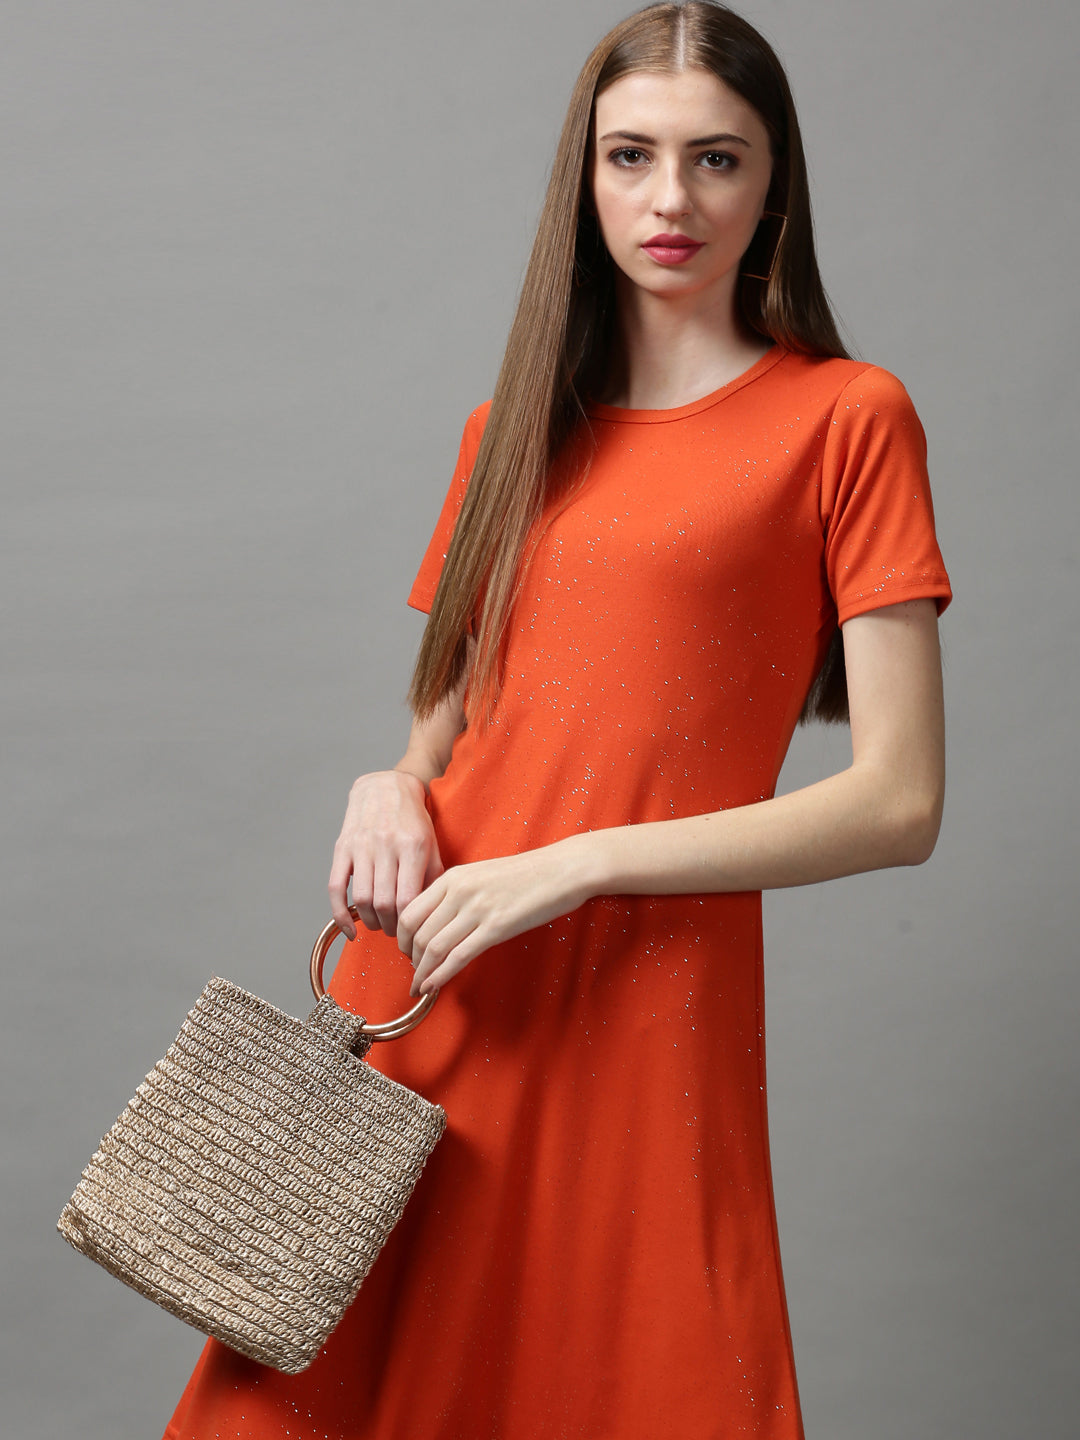 Women's Orange Embellished A-Line Dress